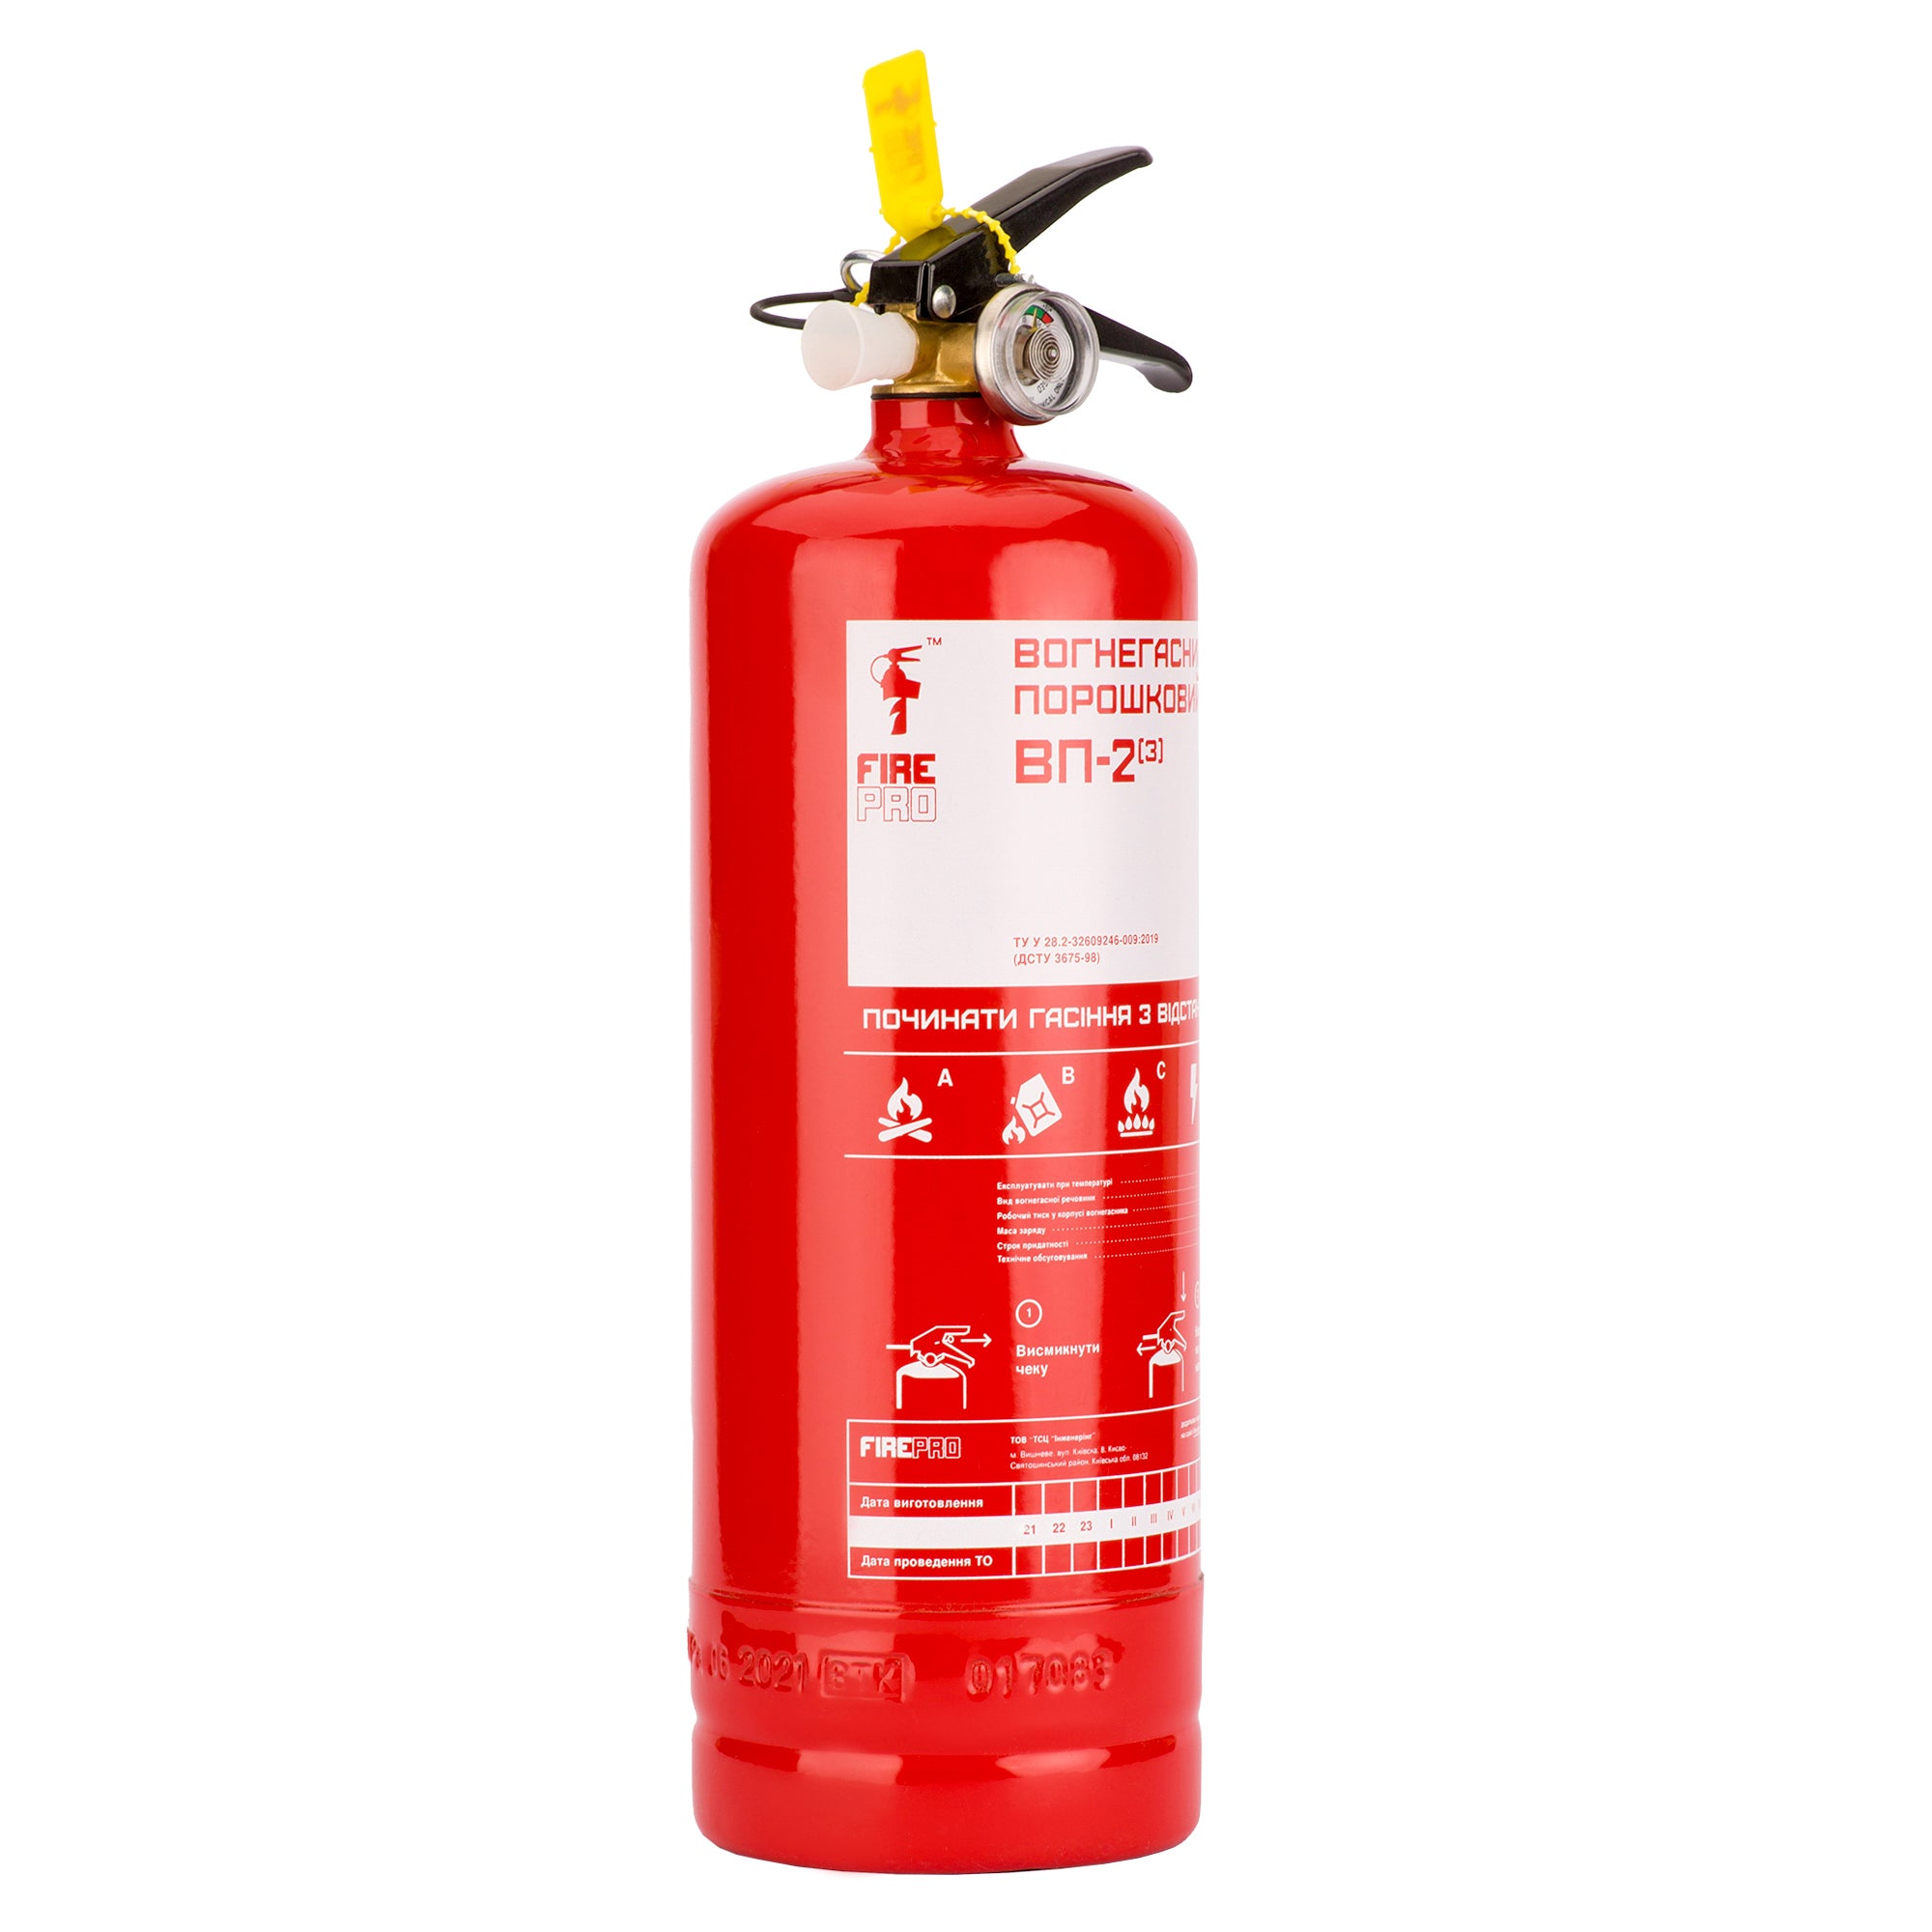  порошковый огнетушитель от производителя | Fire Pro